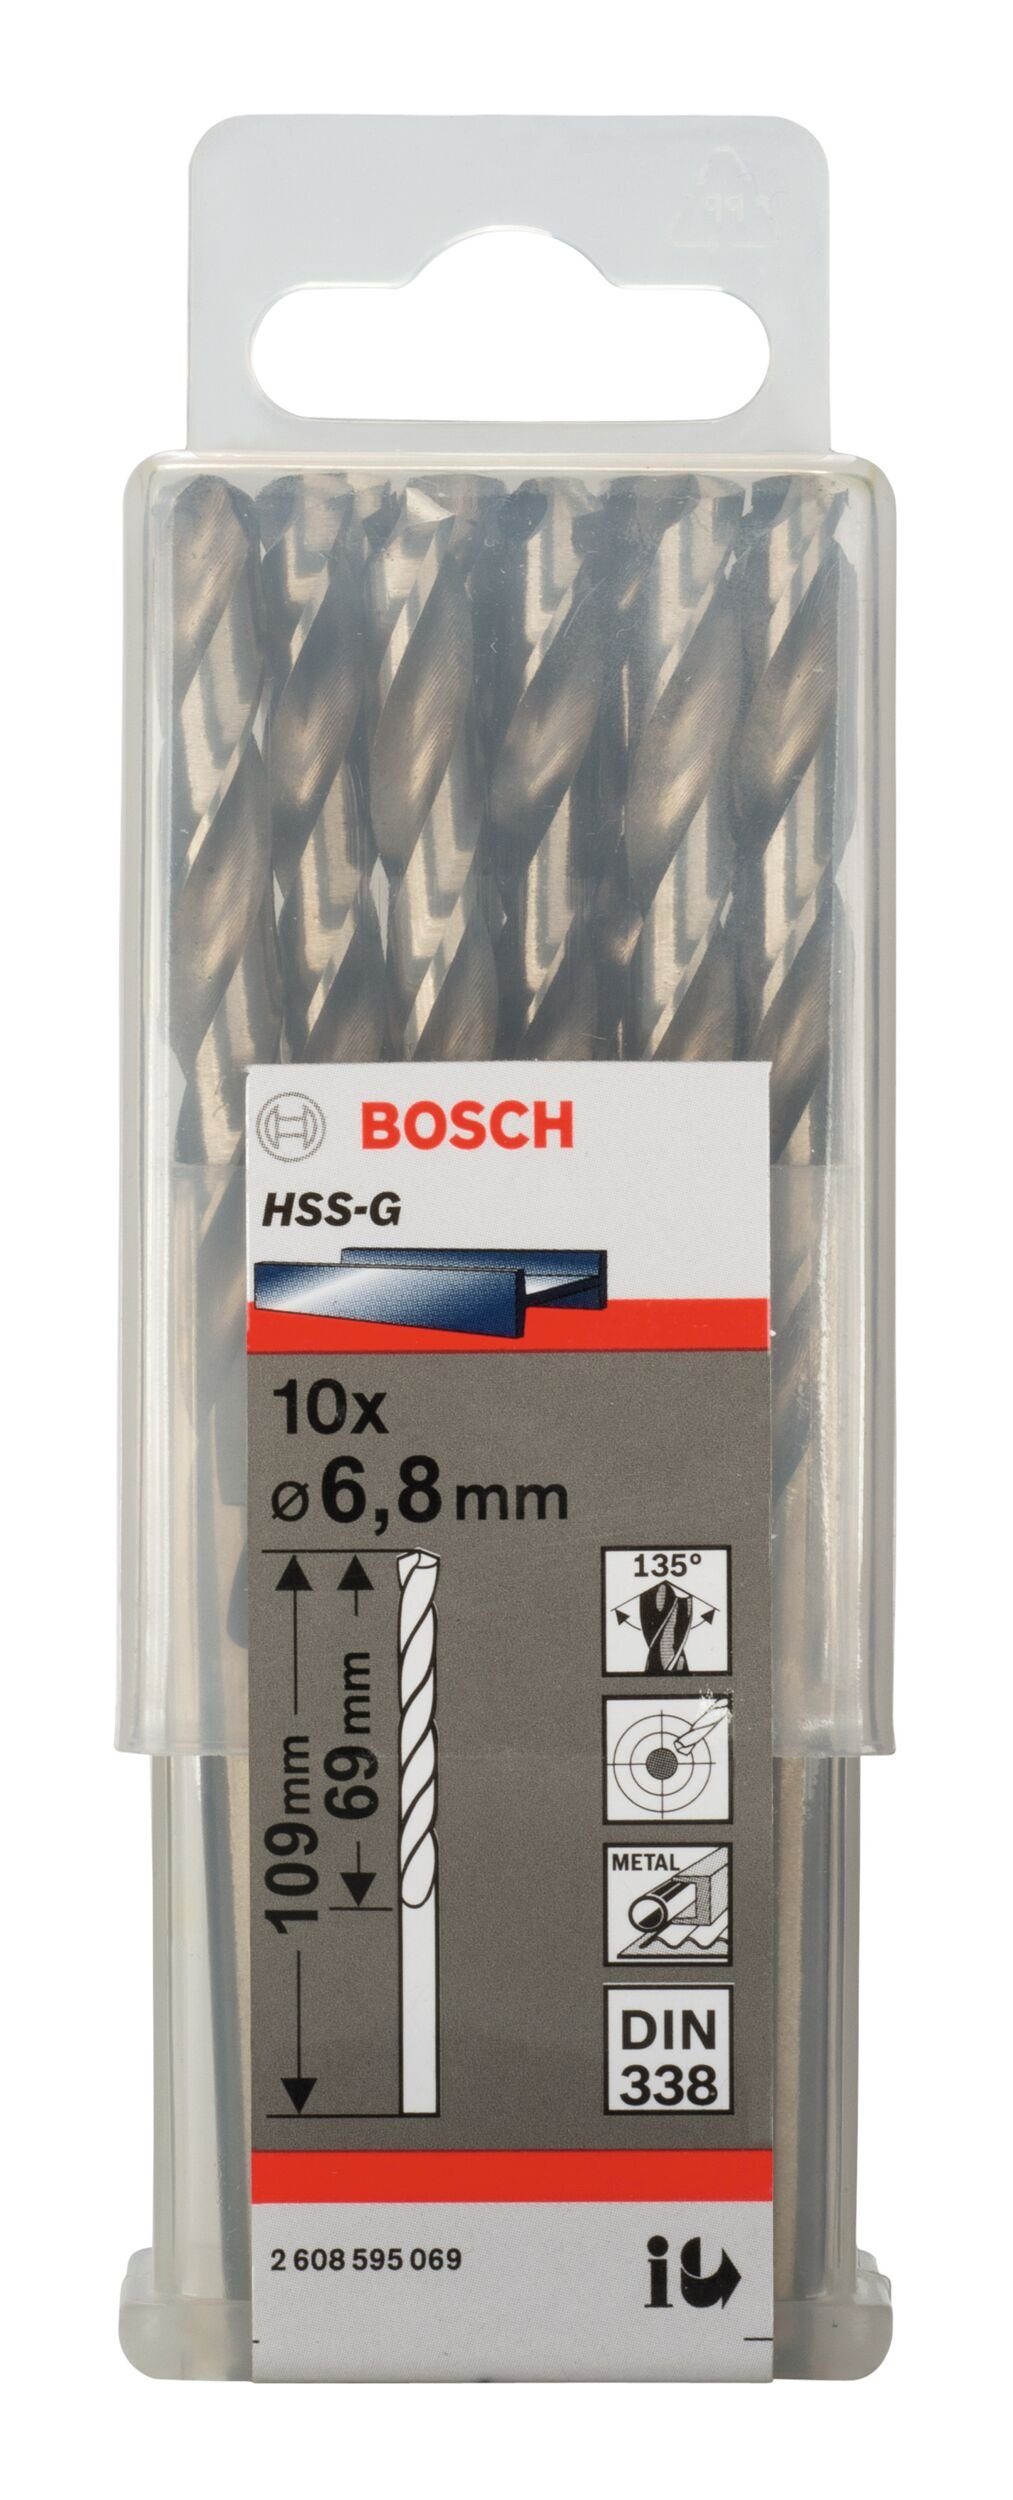 (10 Metallbohrer, 109 BOSCH mm (DIN 338) - Stück), - 10er-Pack x HSS-G x 69 6,8